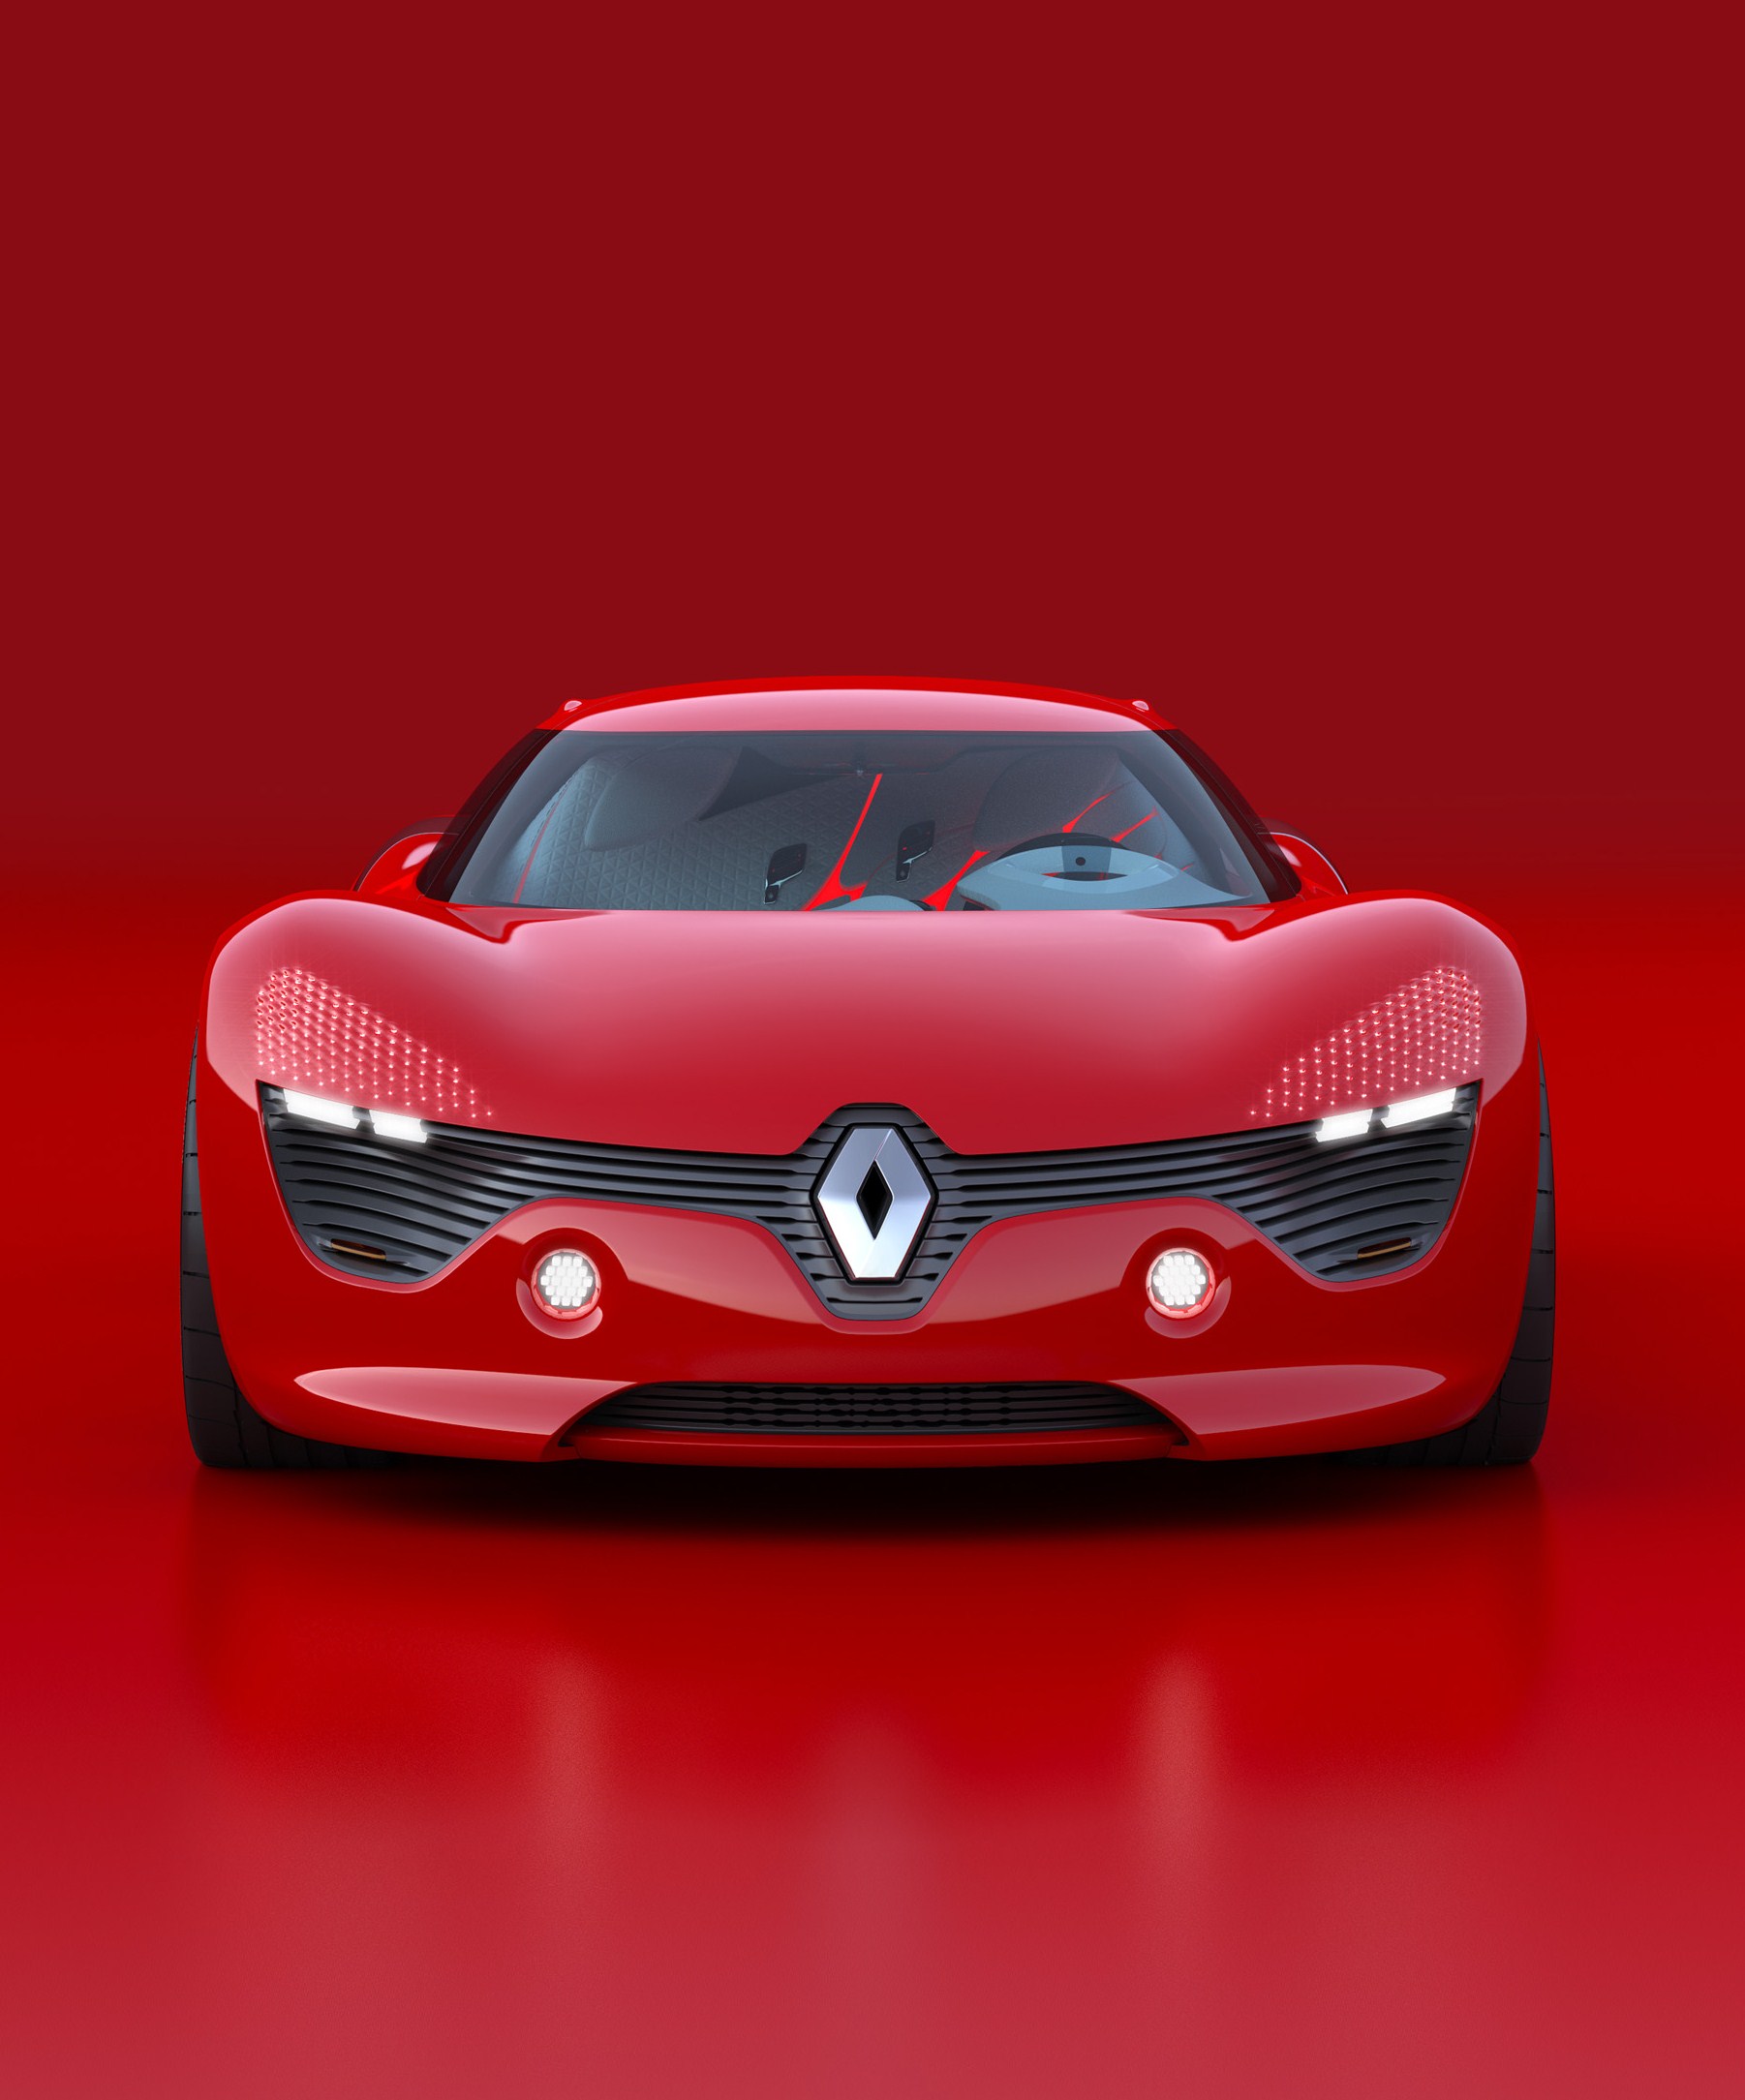 Renault DeZir concept